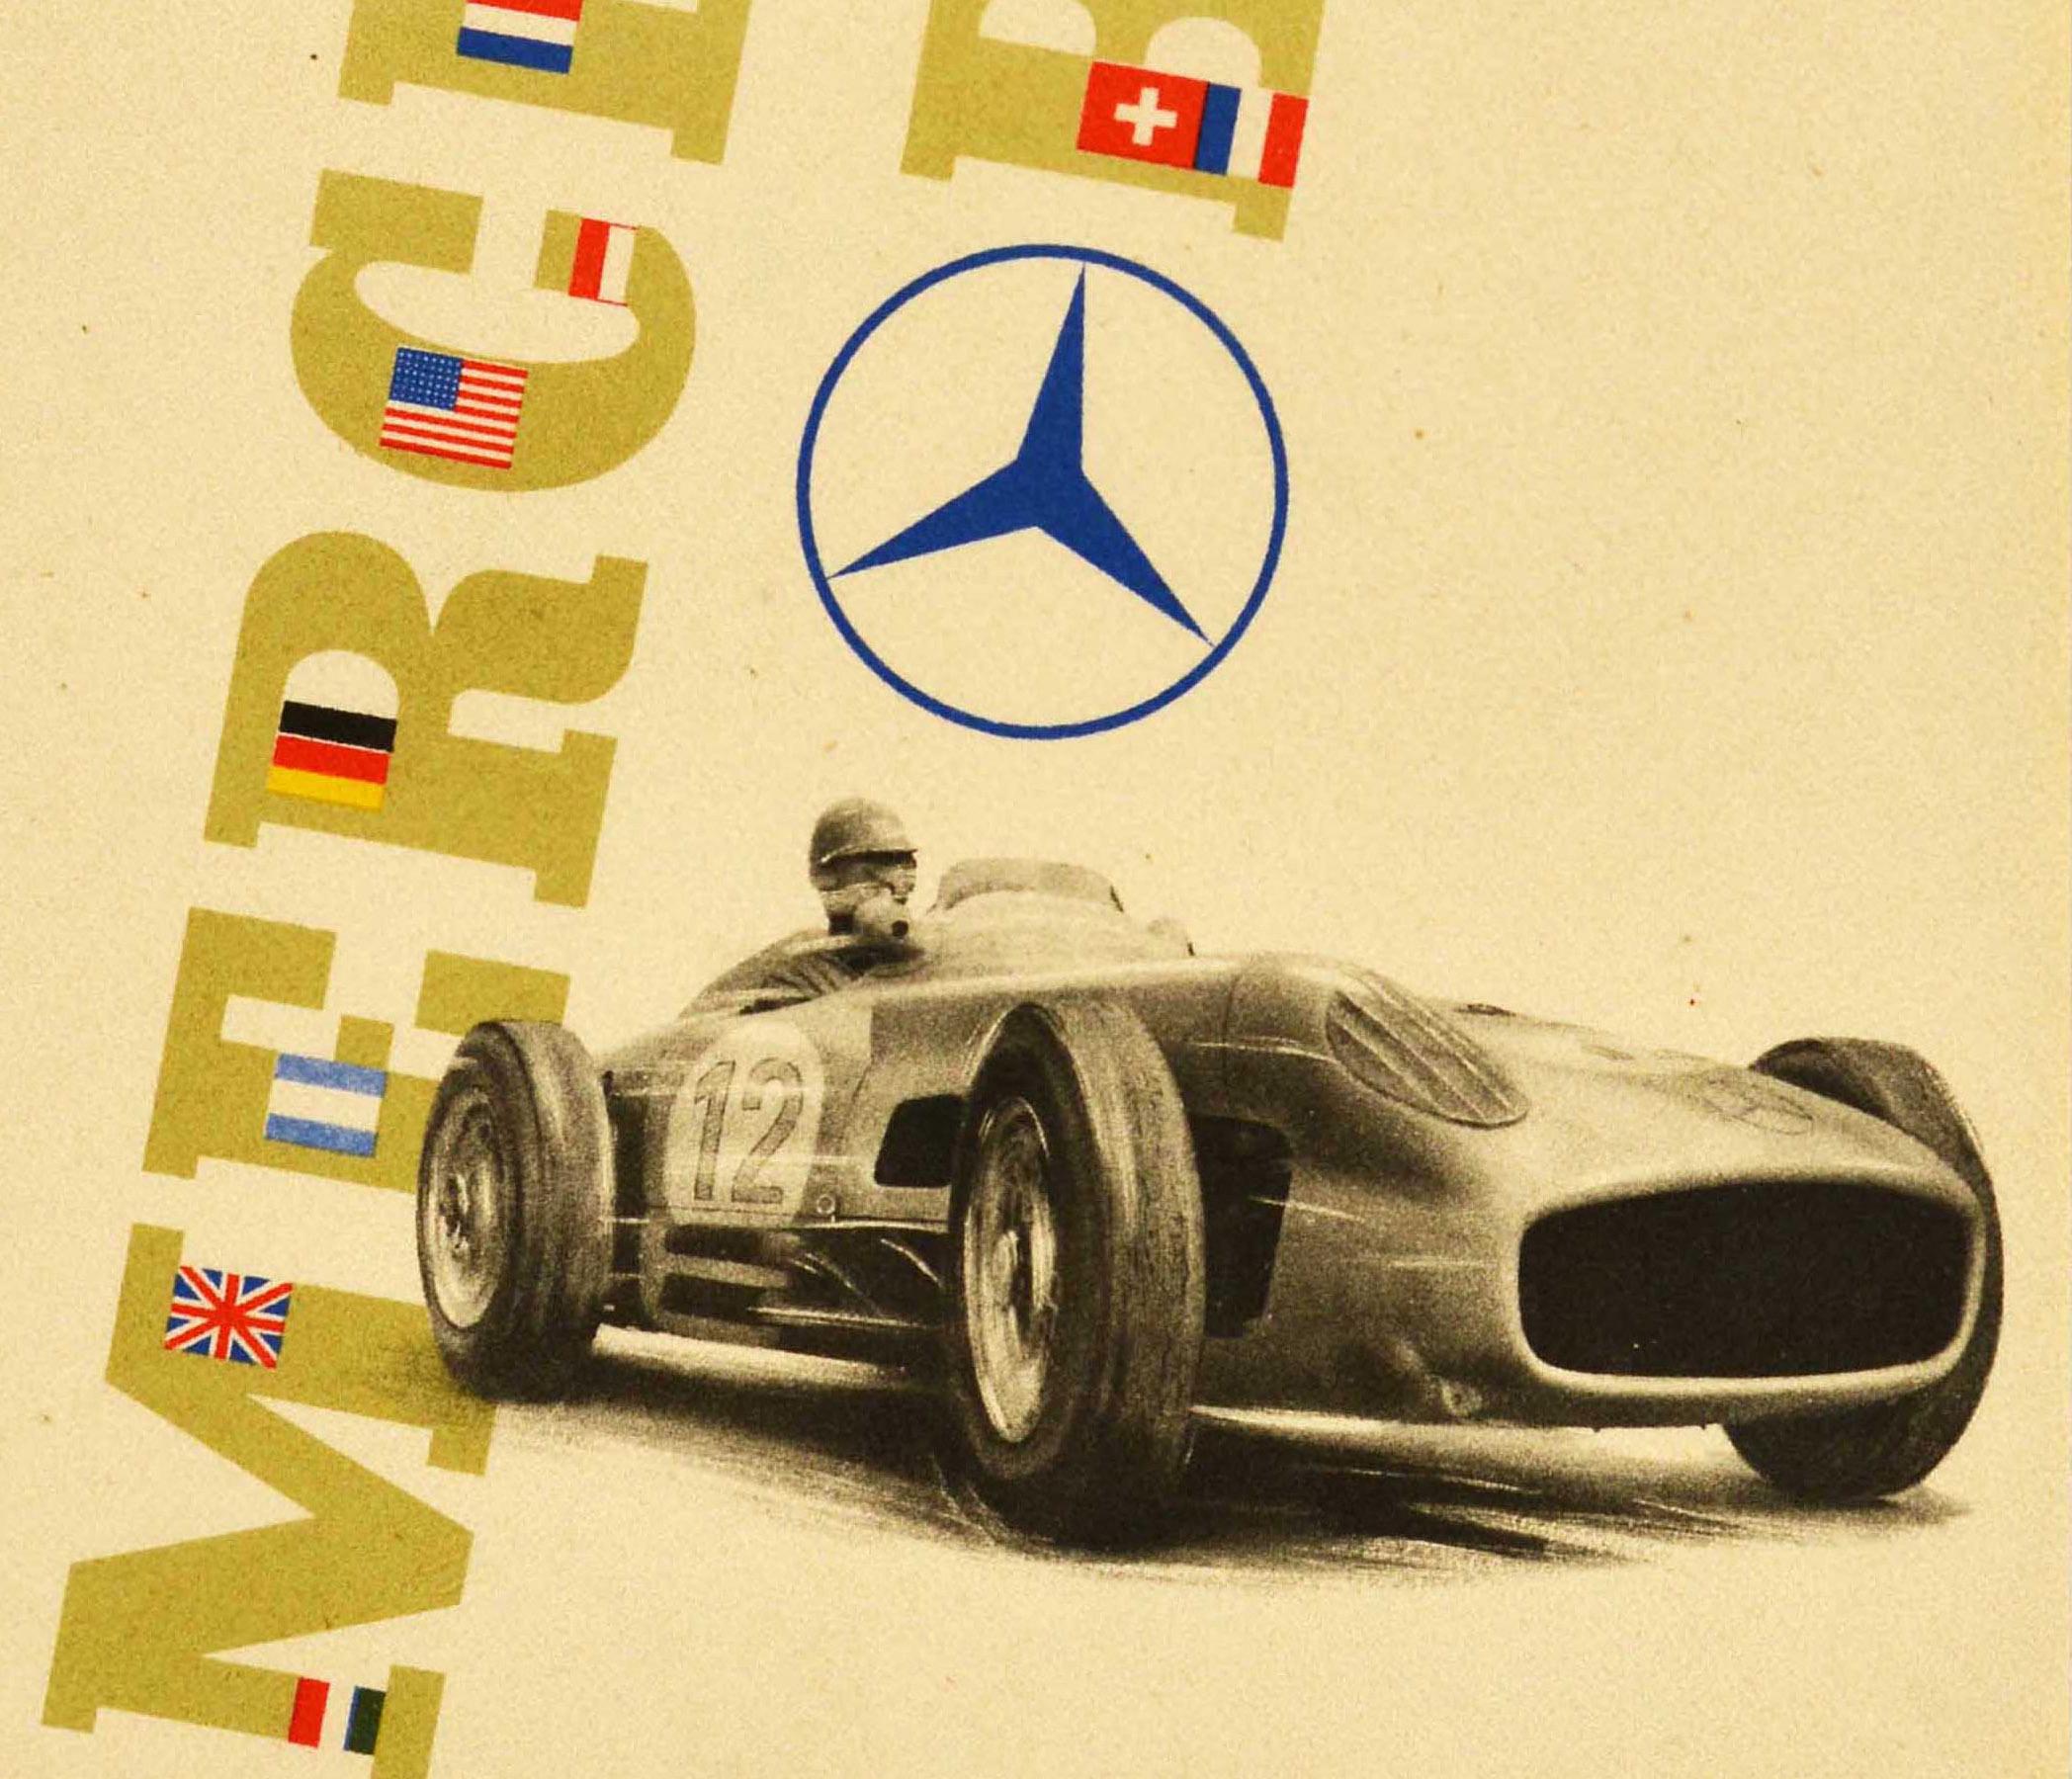 Original Vintage Plakat zur Werbung für den Mercedes-Benz Vierfachsieg beim Großen Preis von England 1955 - Vierfacher Mercedes-Benz-Sieg im Großen Preis von England 1955 1. Stirling Moss 2. Weltmeister / World Champion Juan Manuel Fangio 3. Karl